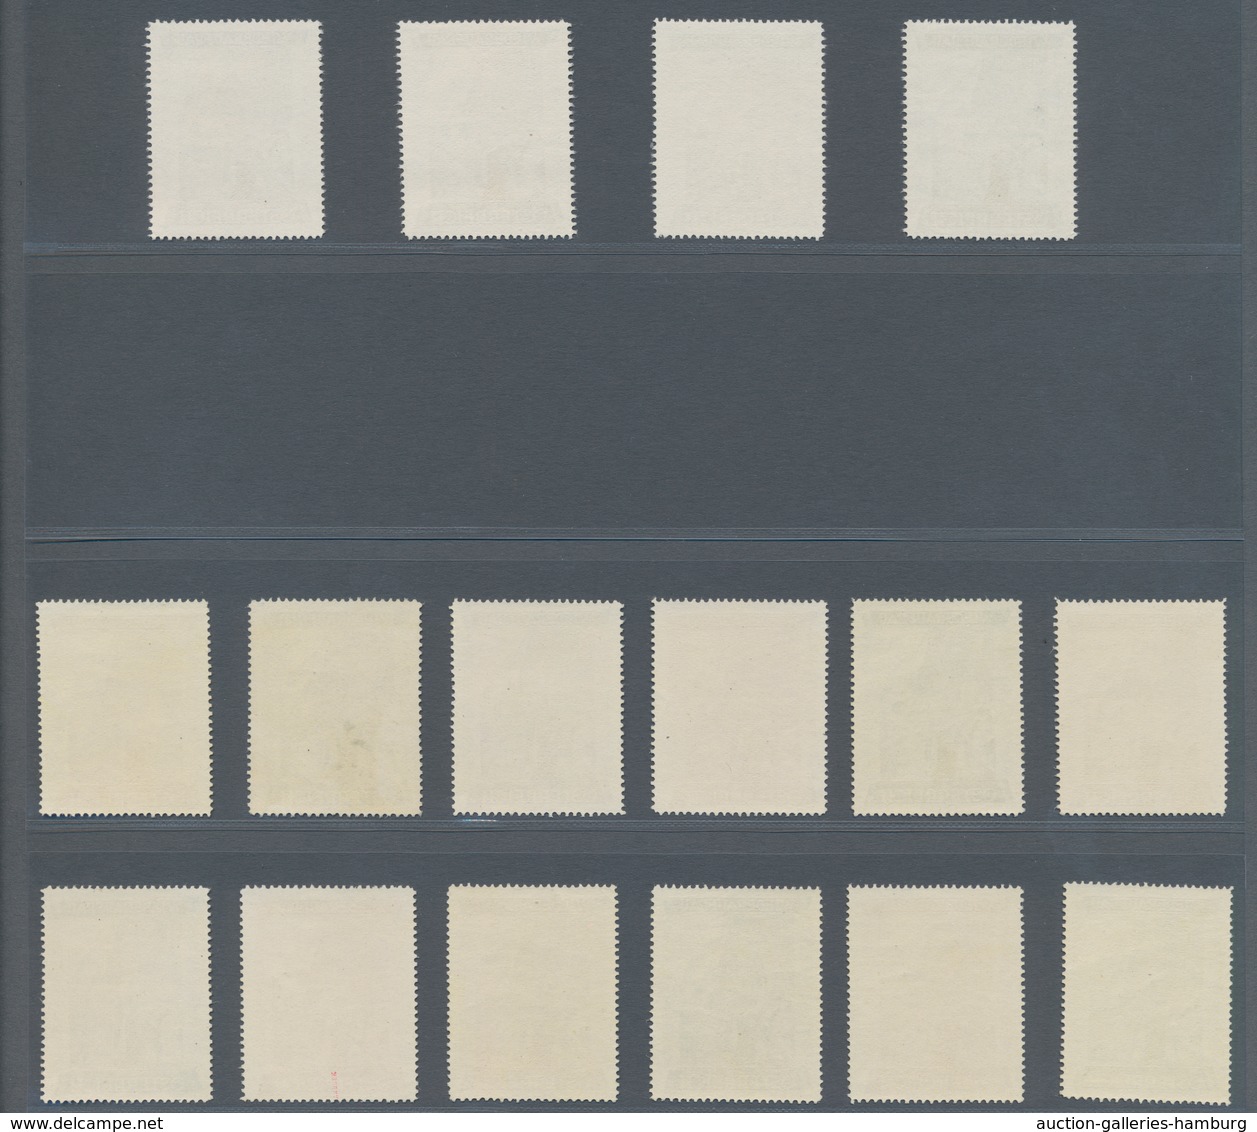 Österreich: 1948, 1 Sch. + 50 Gr. "Wiederaufbau", 16 (meist) verschiedene Farbproben in Linienzähnun